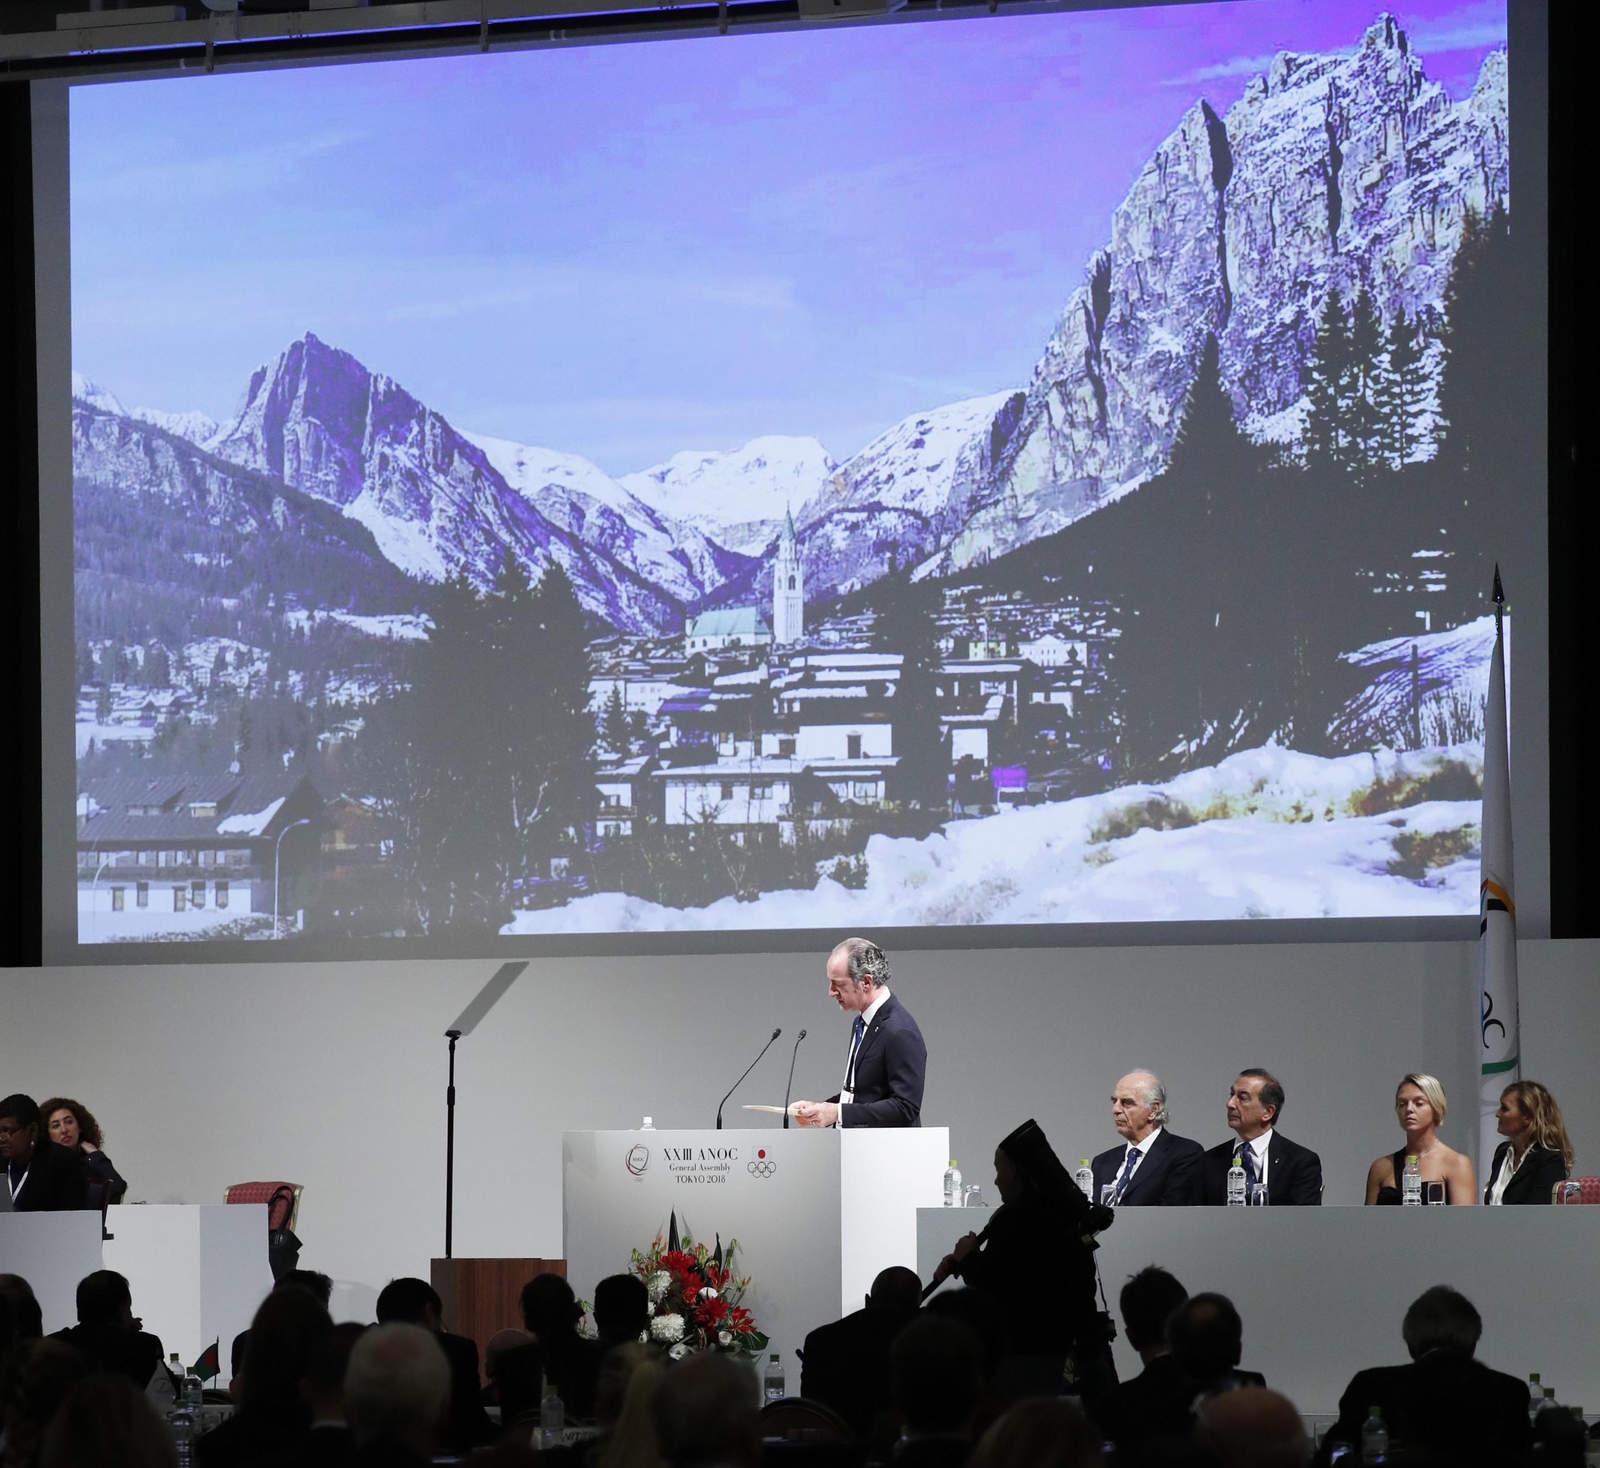 Un delegado de Italia presenta la candidatura de Milán-Cortina d’Ampezzo por la sede de los Juegos Olímpicos de Invierno de 2026. (AP)